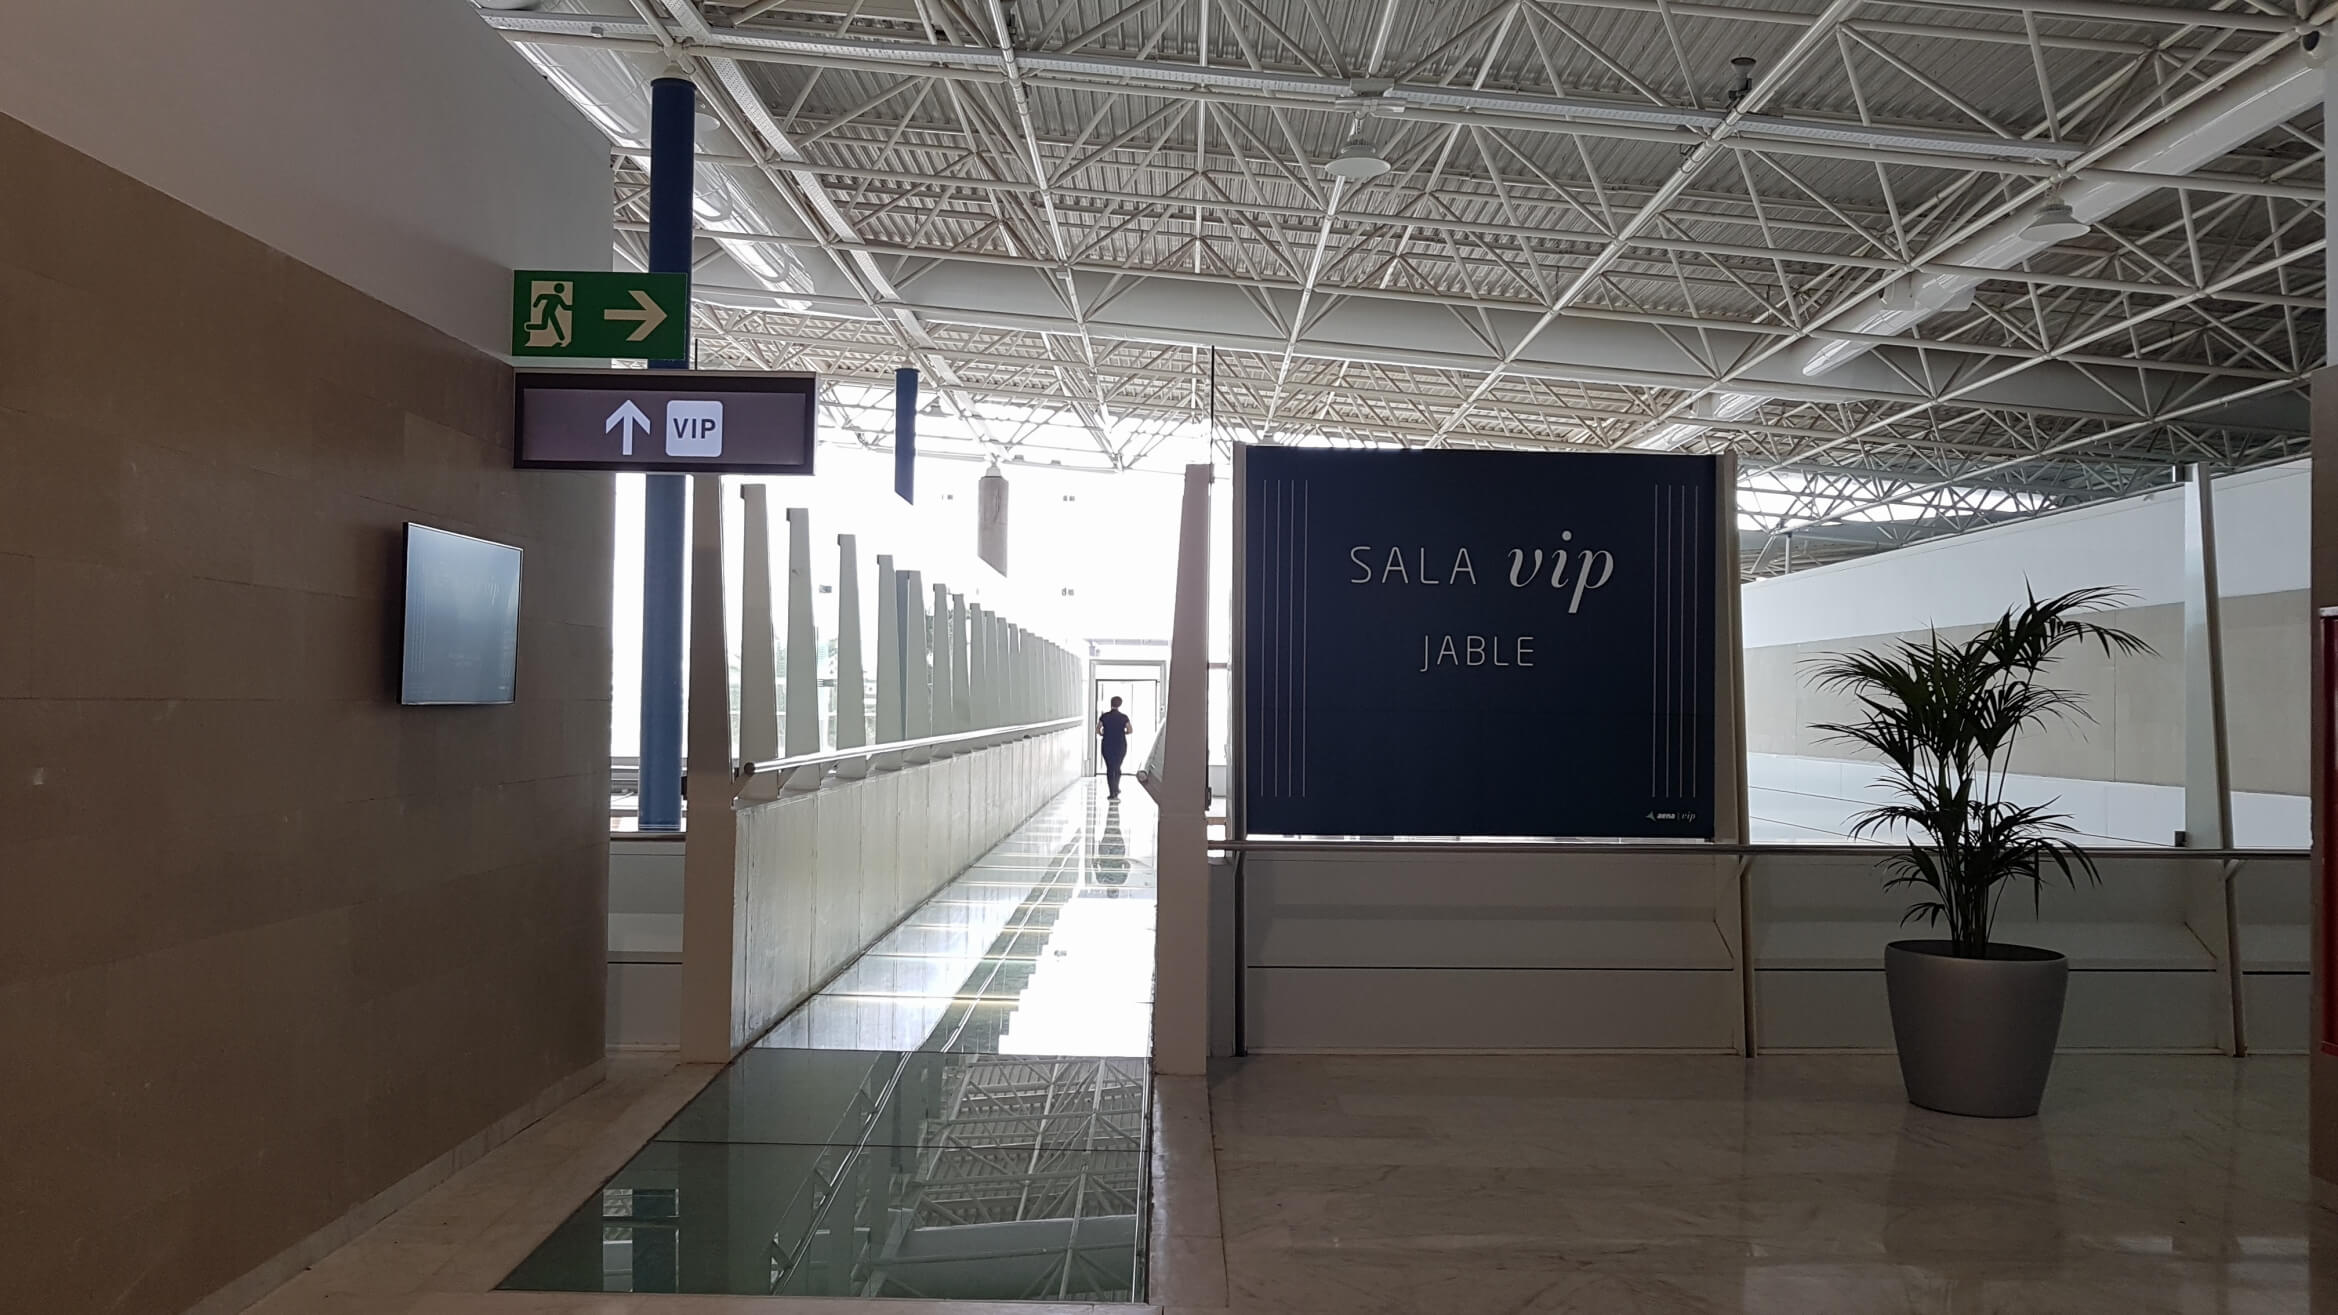 Flughafen Fuerteventura VIP Lounge